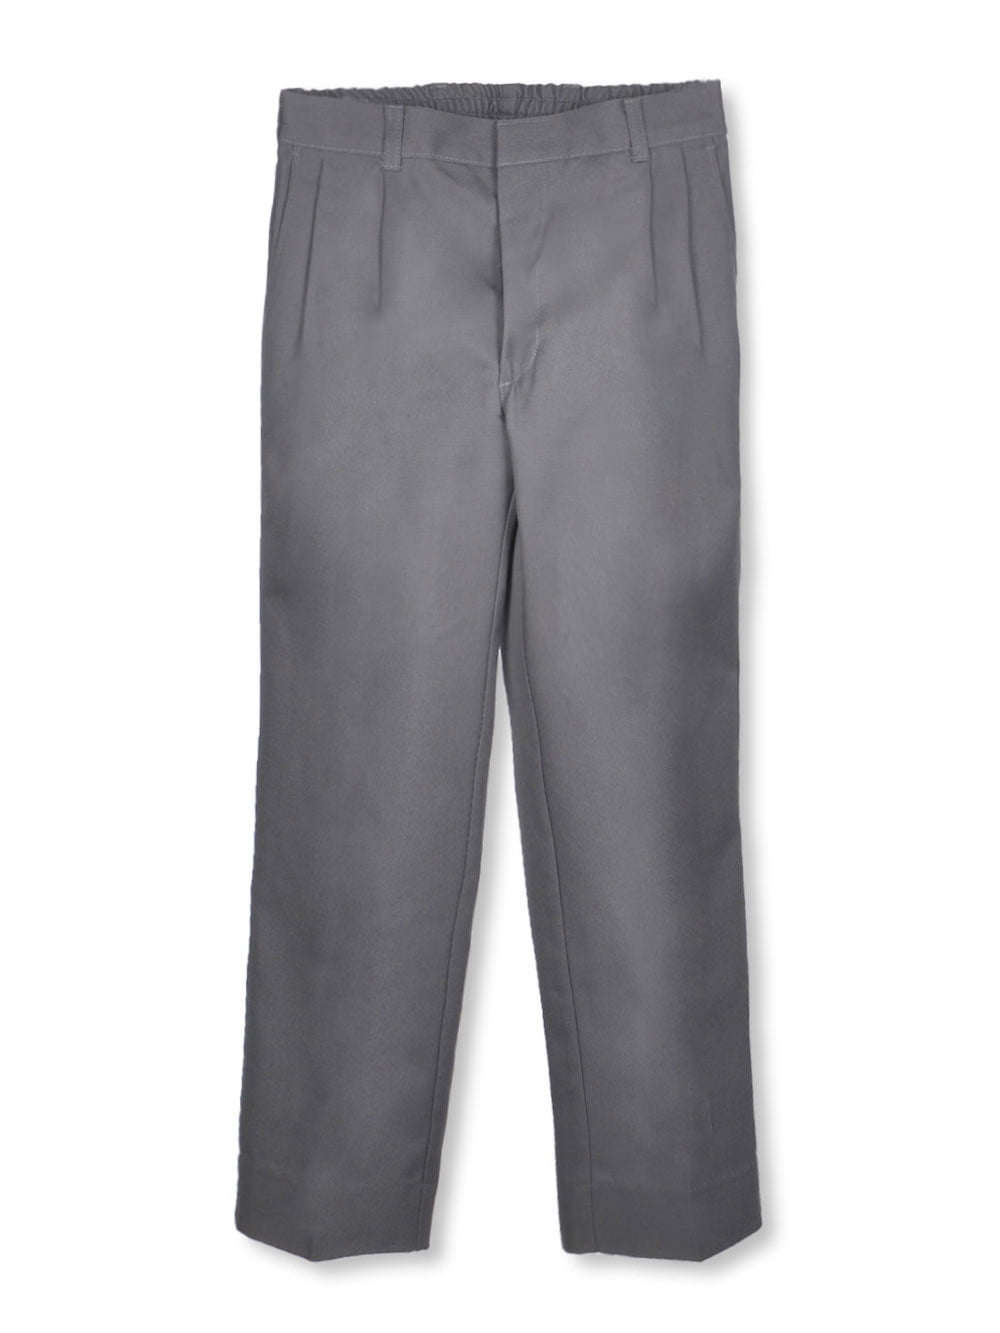 Boys Husky Pants Flat Front U647 Universal School Uniform Size 8H to 20H |  eBay